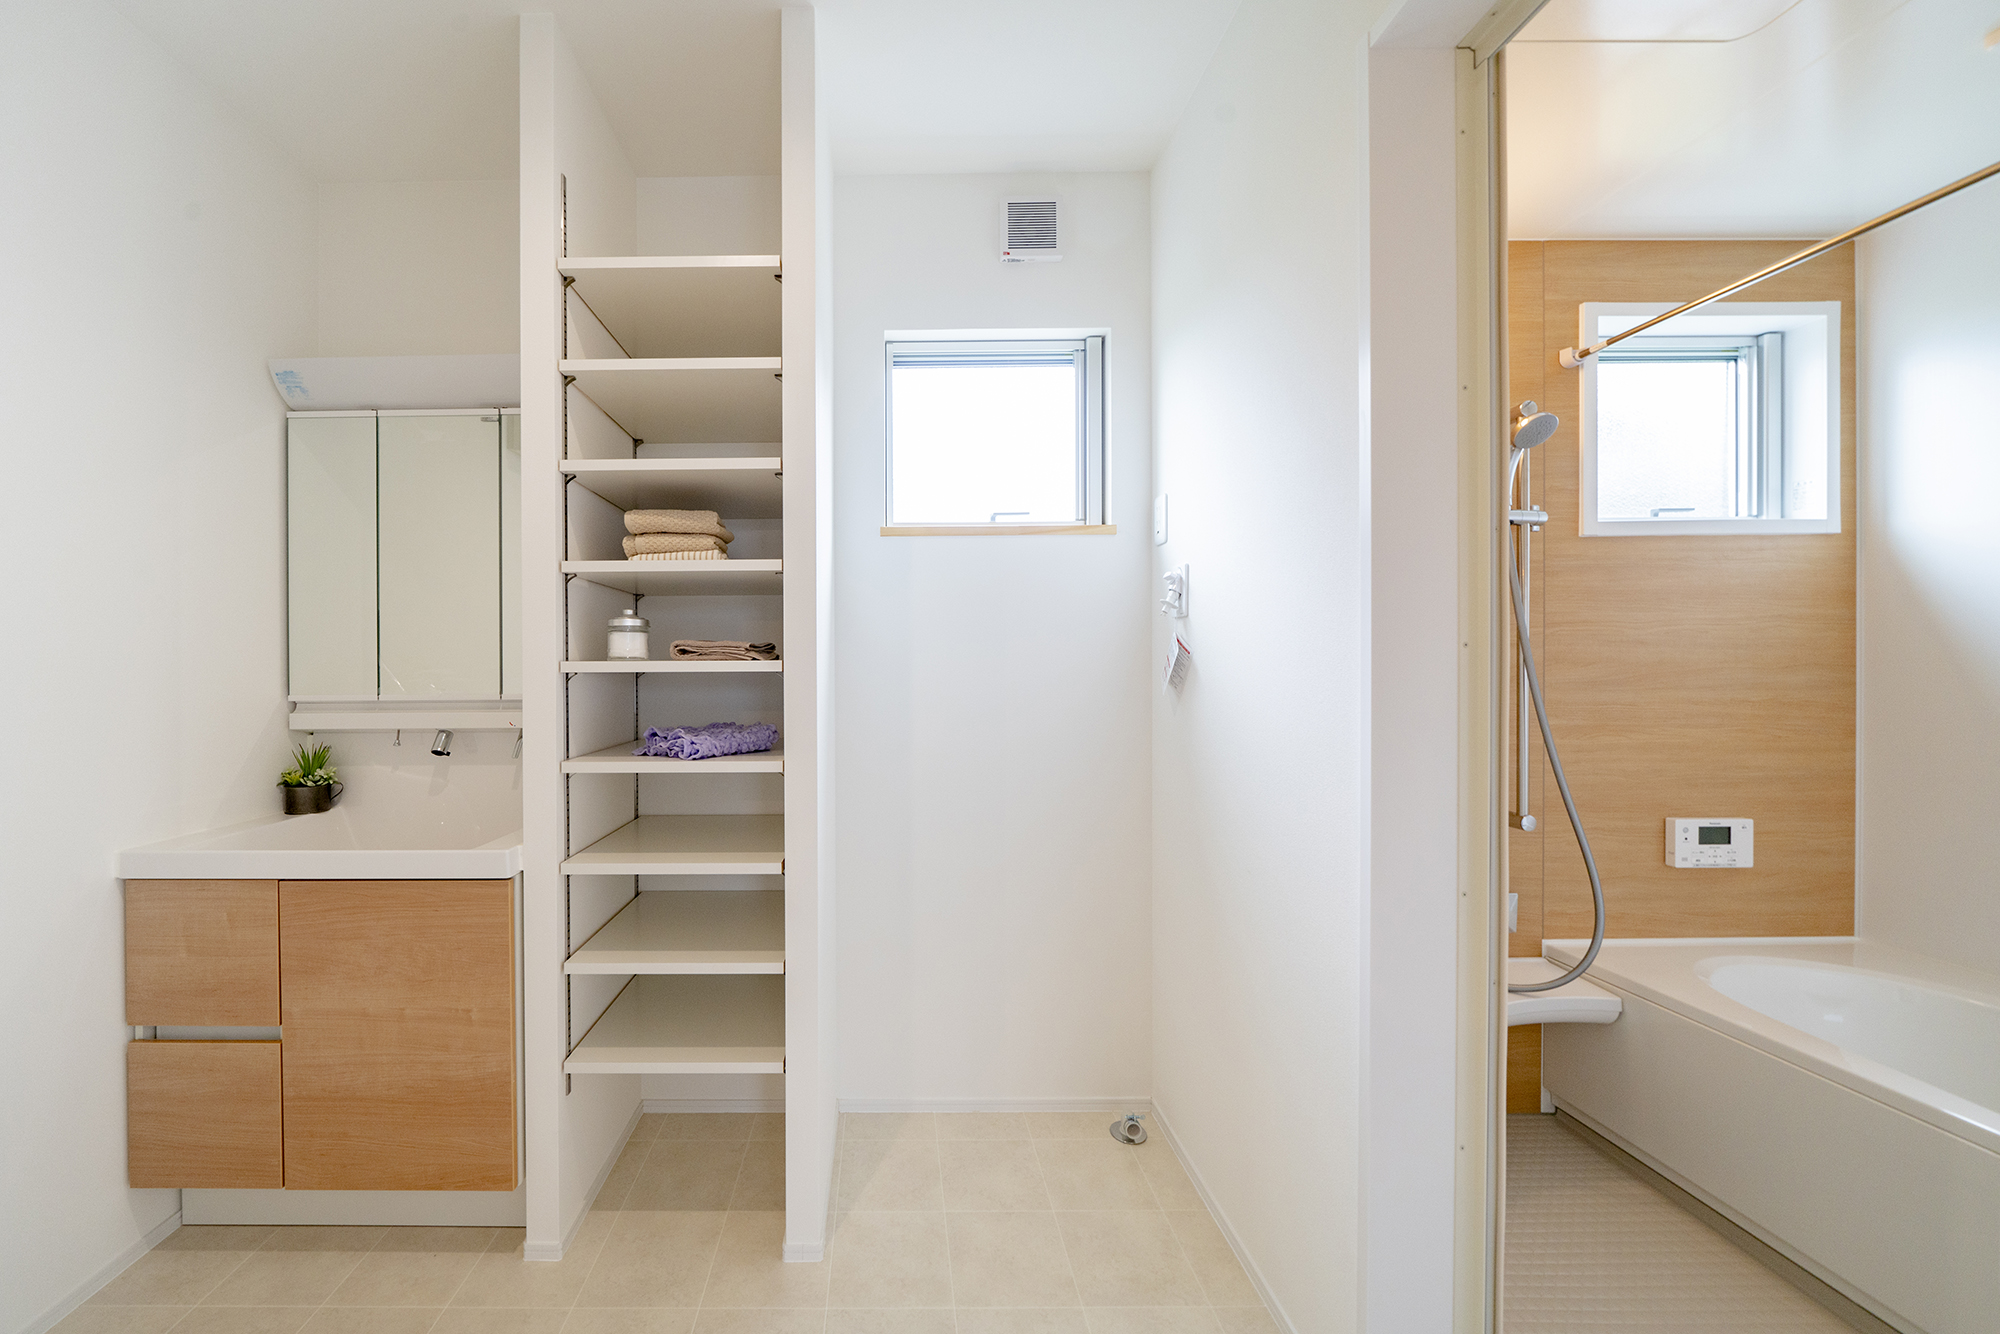 明るく清潔感のある水回りスペース。洗面台の横には、タオルや下着などを置いておける収納棚を設置